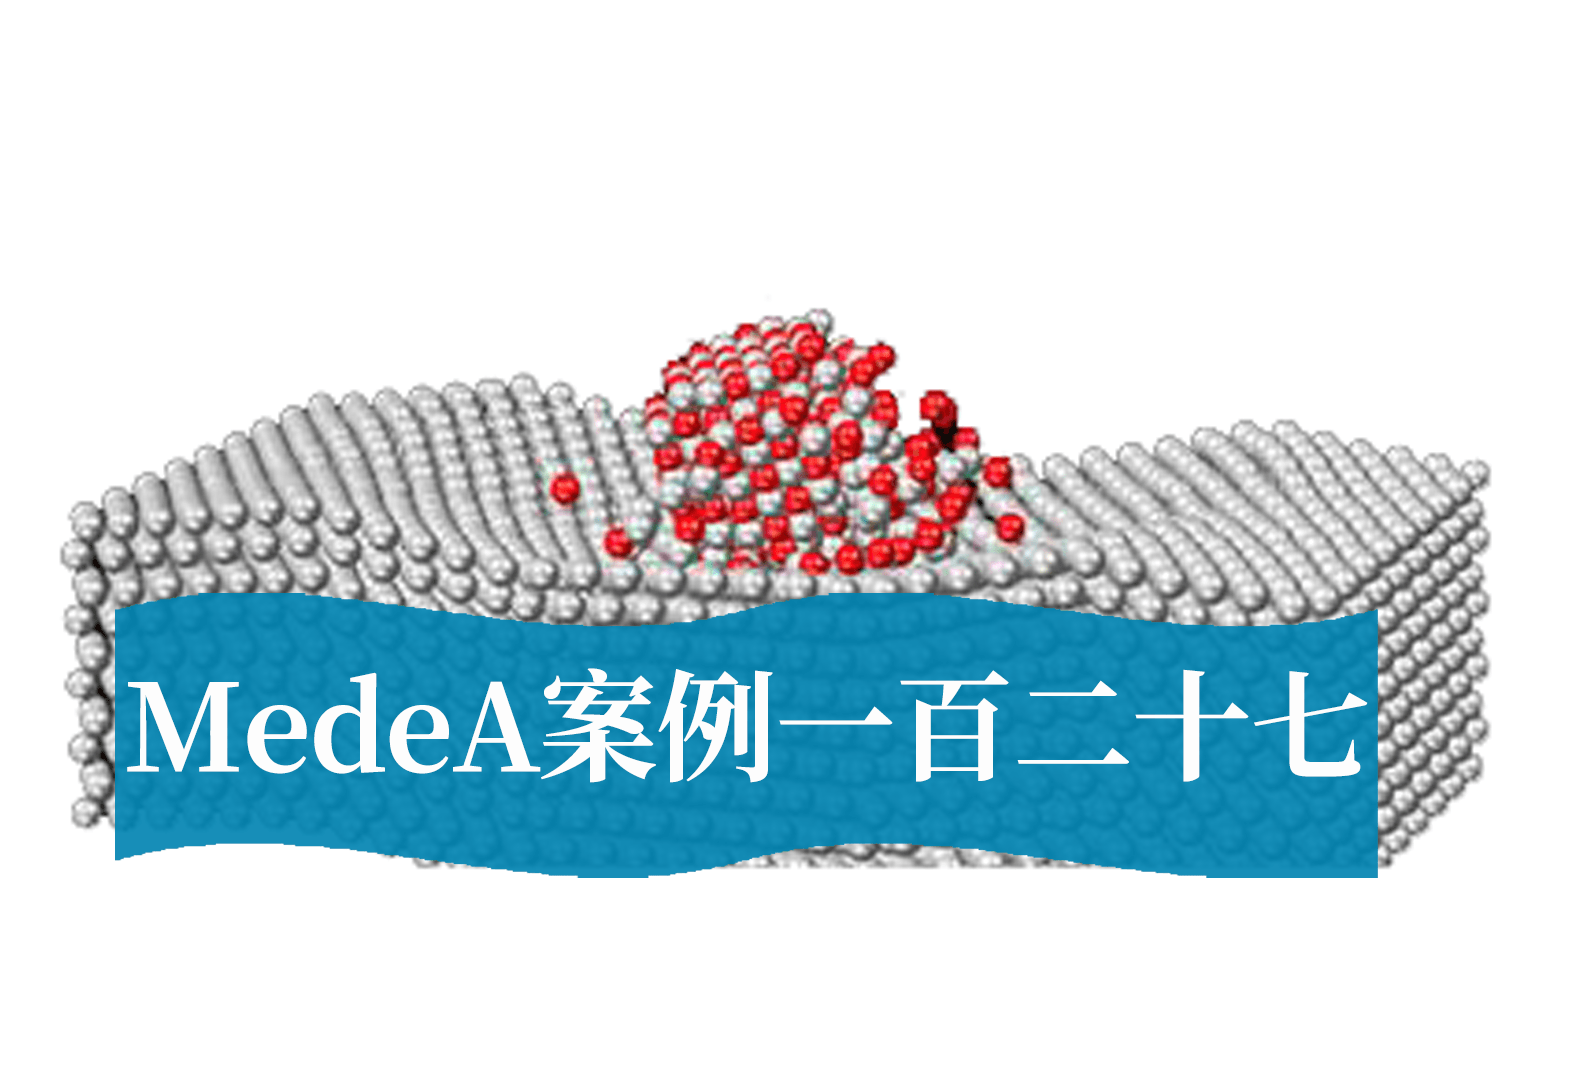 MedeA案例127：高导金属掺杂增强尖晶石电催化性能